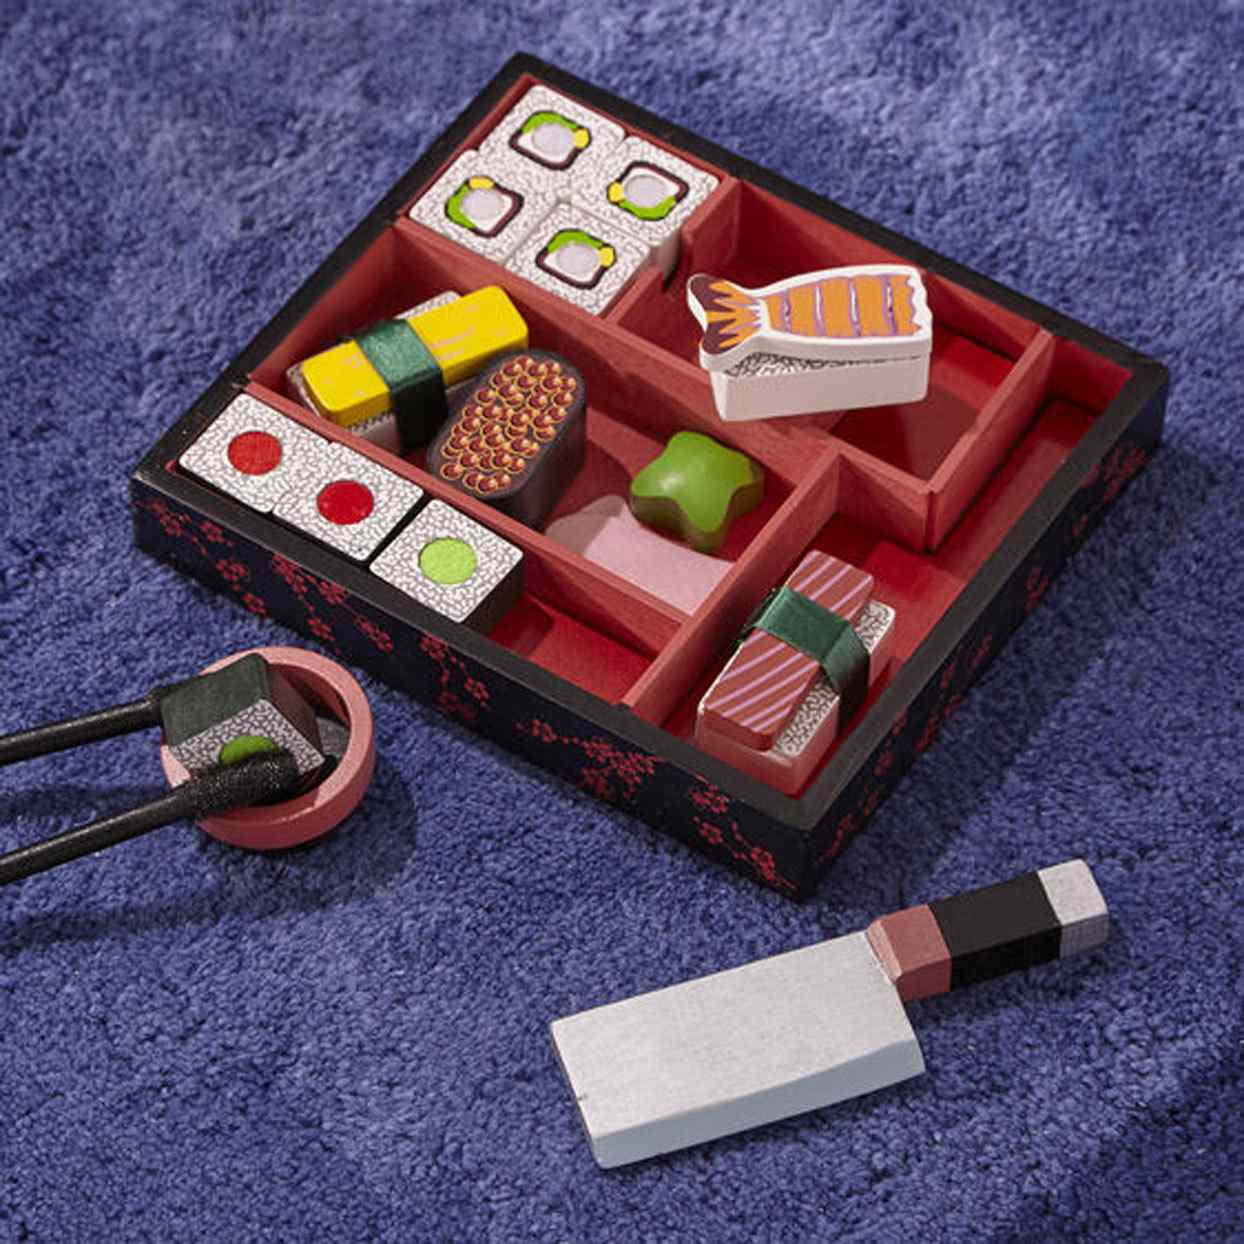 wooden toy sushi set